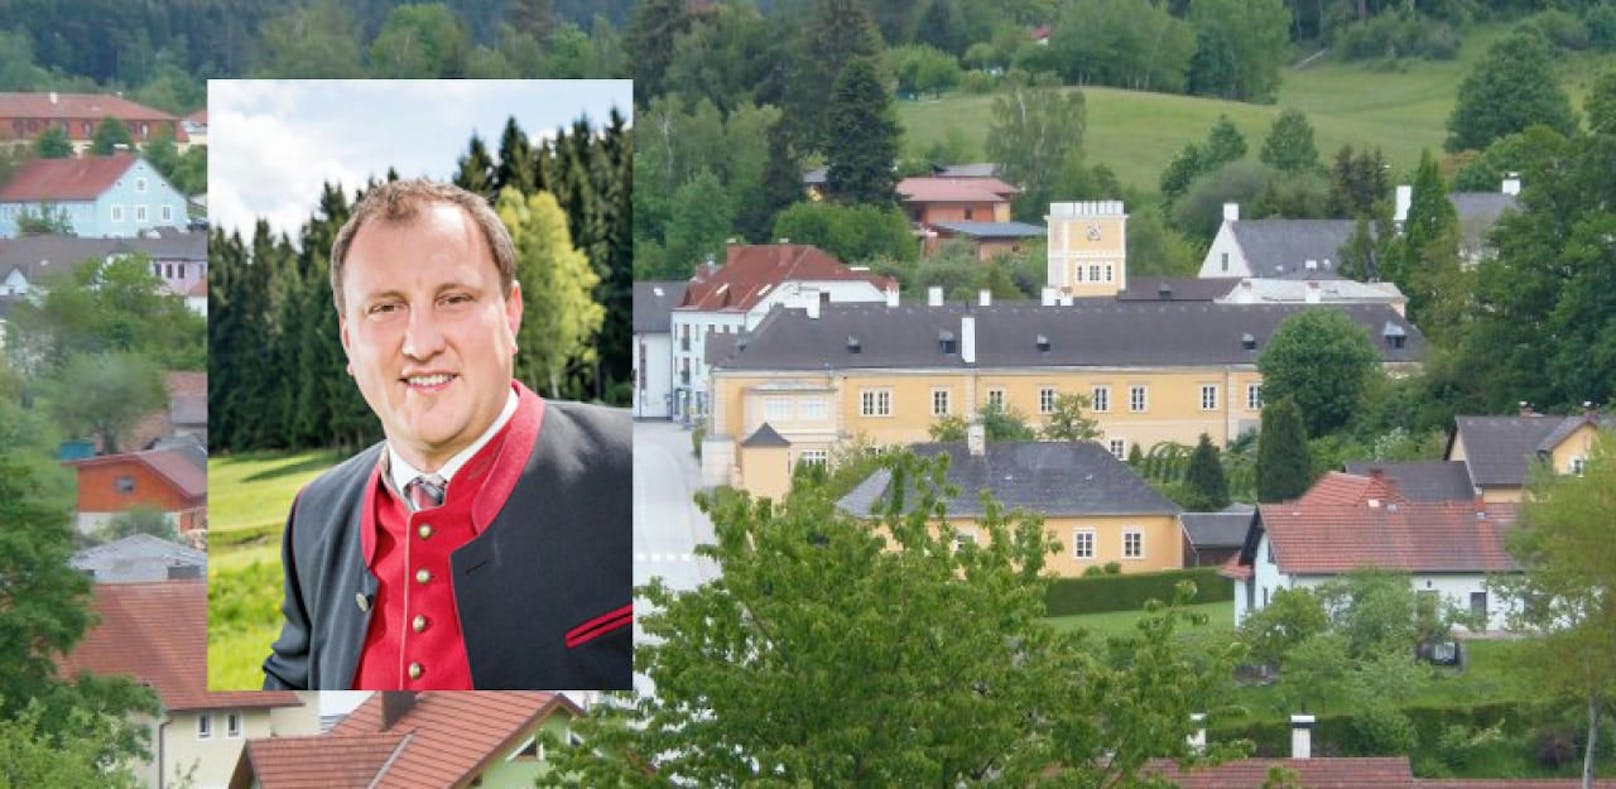 Bad Großpertholz: Ortschef tritt zurück